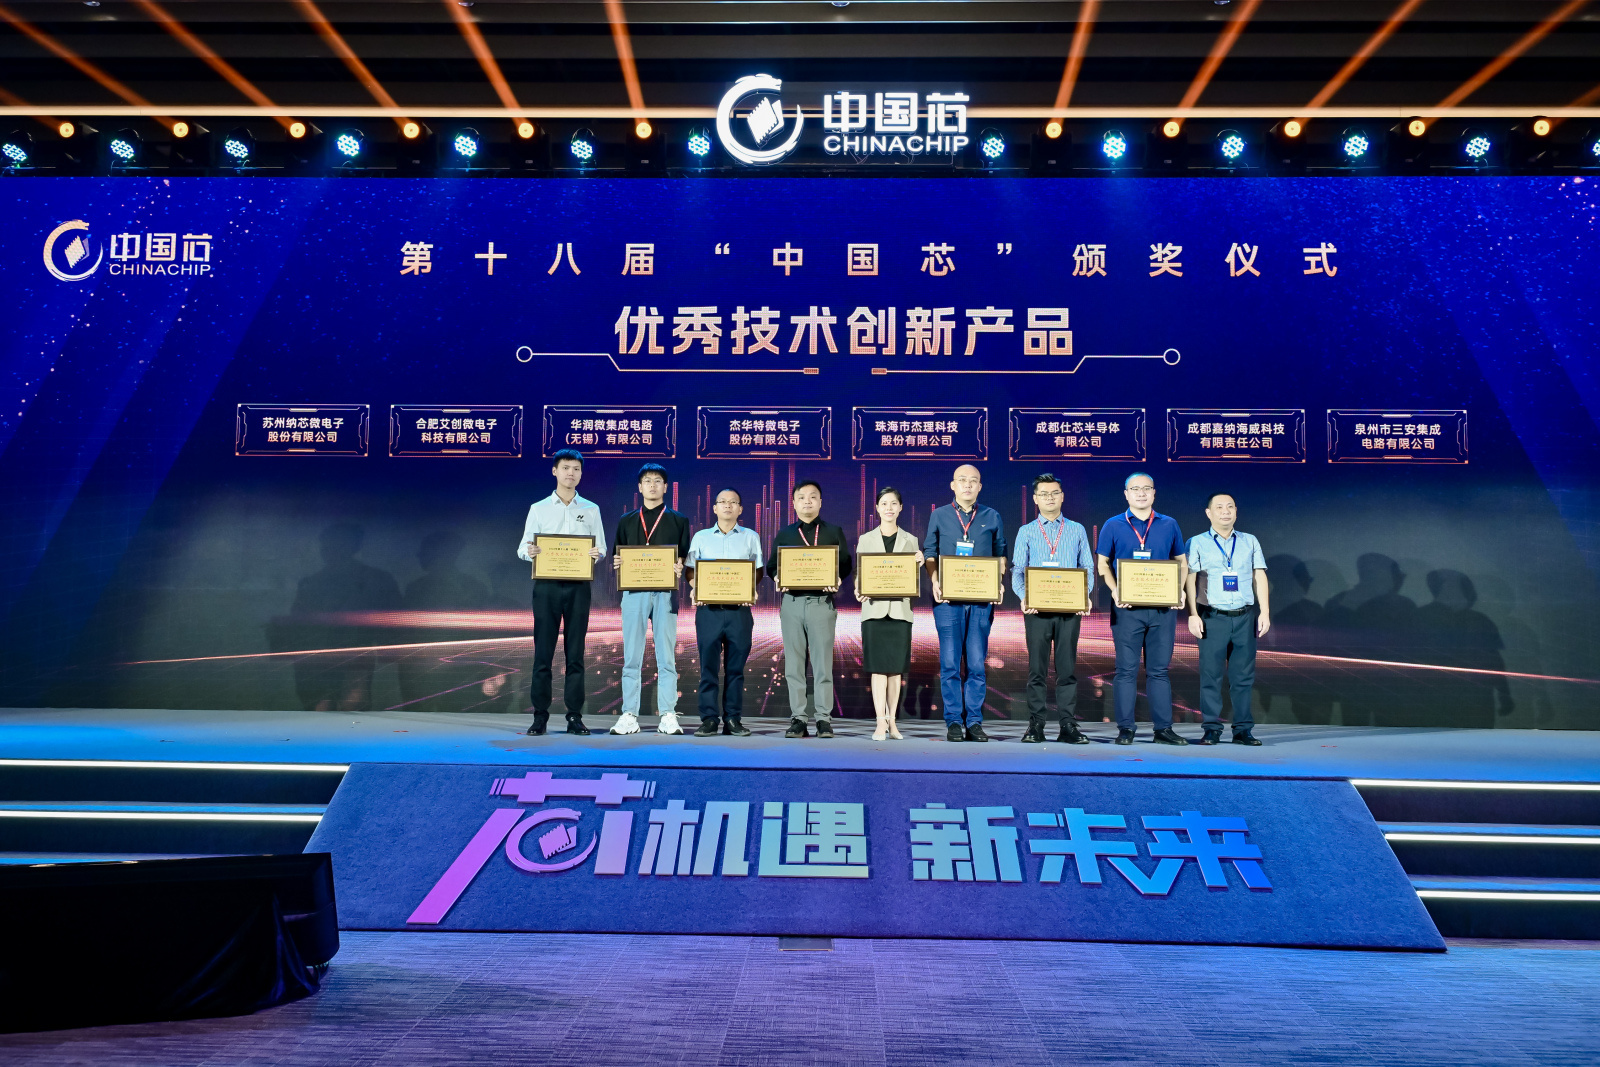 行业认可 | 艾创微荣获第十八届“中国芯”优秀技术创新产品奖